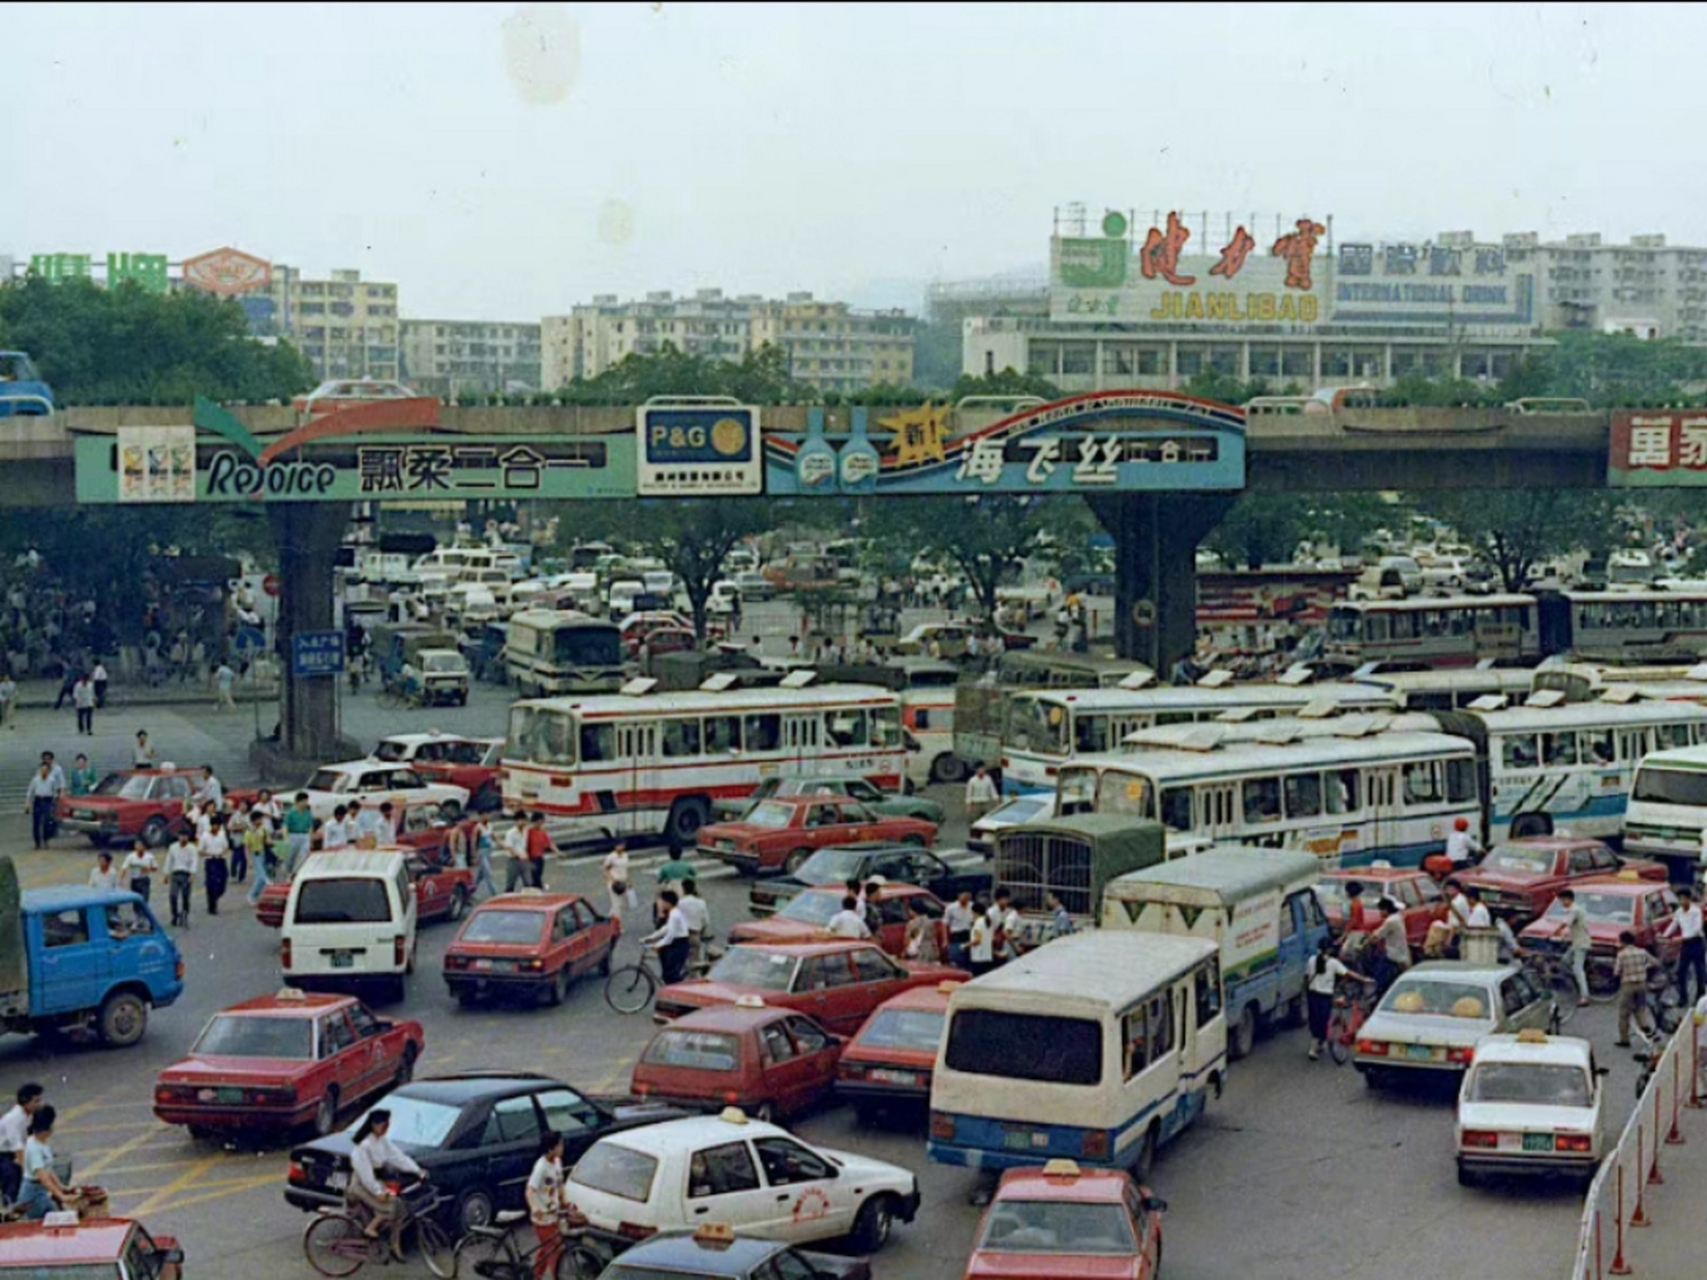 在上世纪九十年代的城市老照片中,可以看到许多人骑自行车或三轮车